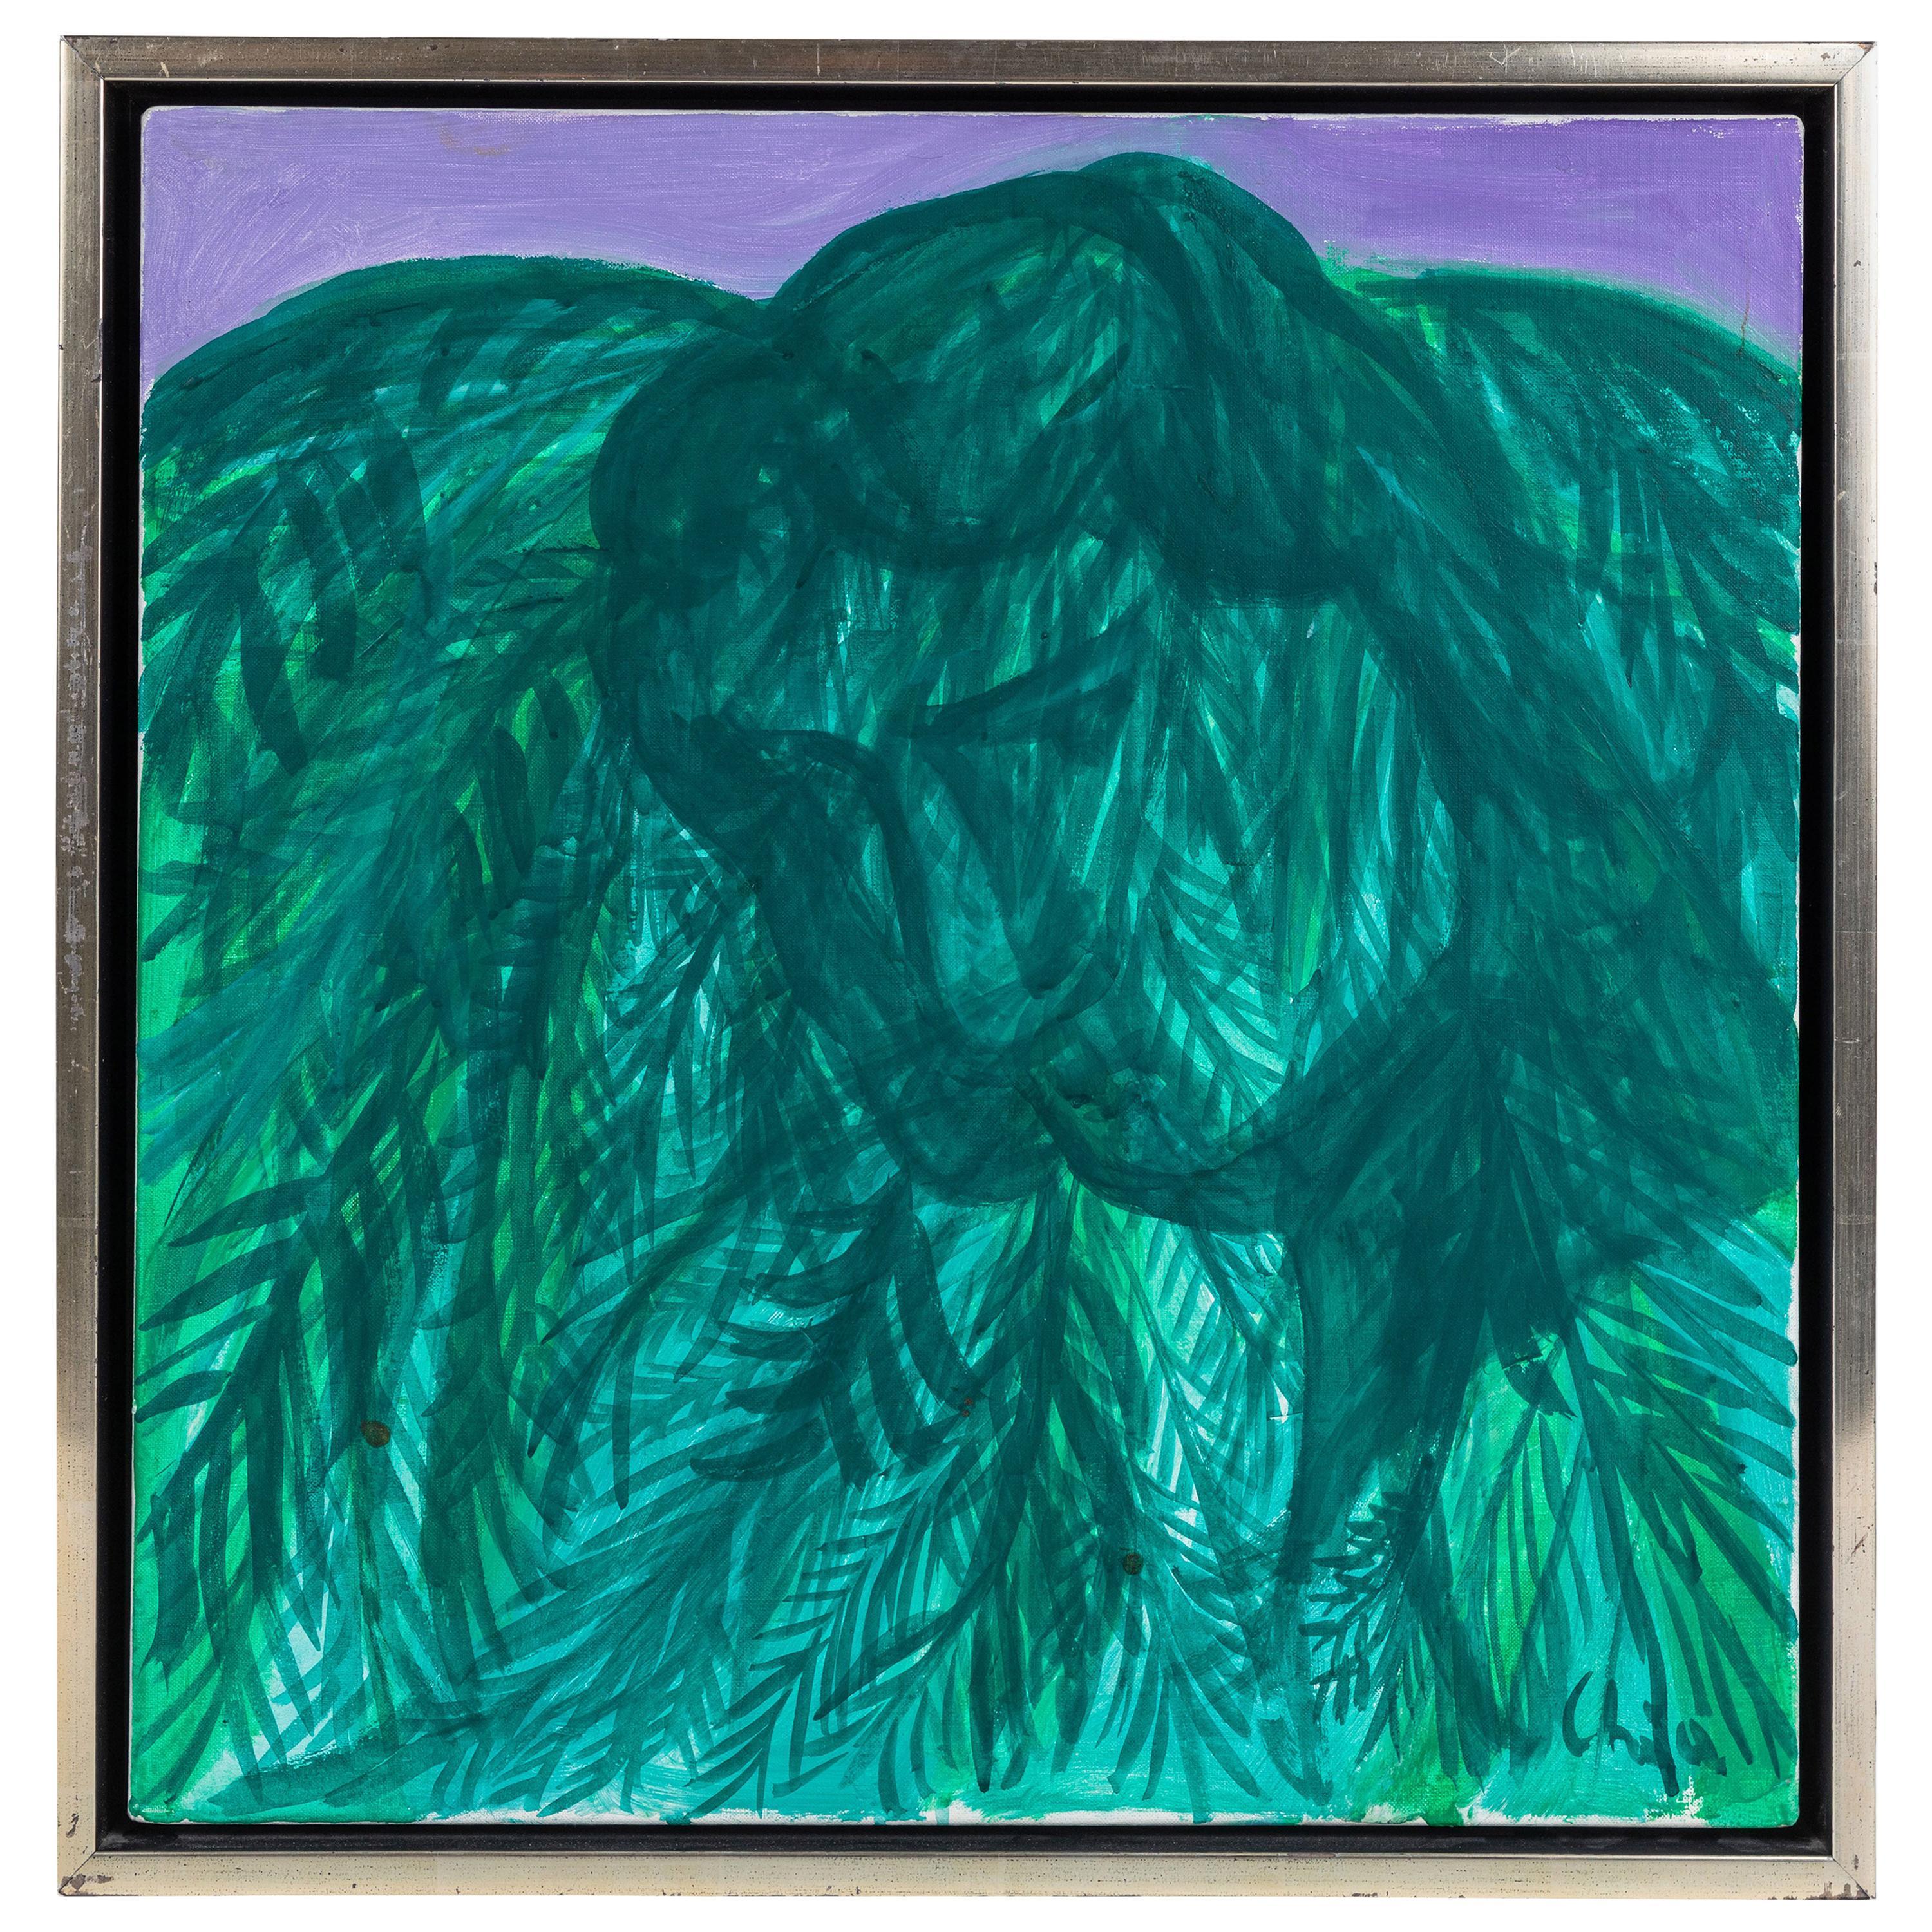 Signiert und datiert, 2007, Öl auf Leinen, abstraktes figuratives Gemälde, "Fairchild Gardens" (in Coral Gables, Florida) des angesehenen italienischen Künstlers Sandro Chia (geb. 1946). Leinwand Größe: 22" x 22"

Über Askart:

Sandro Chia wurde am